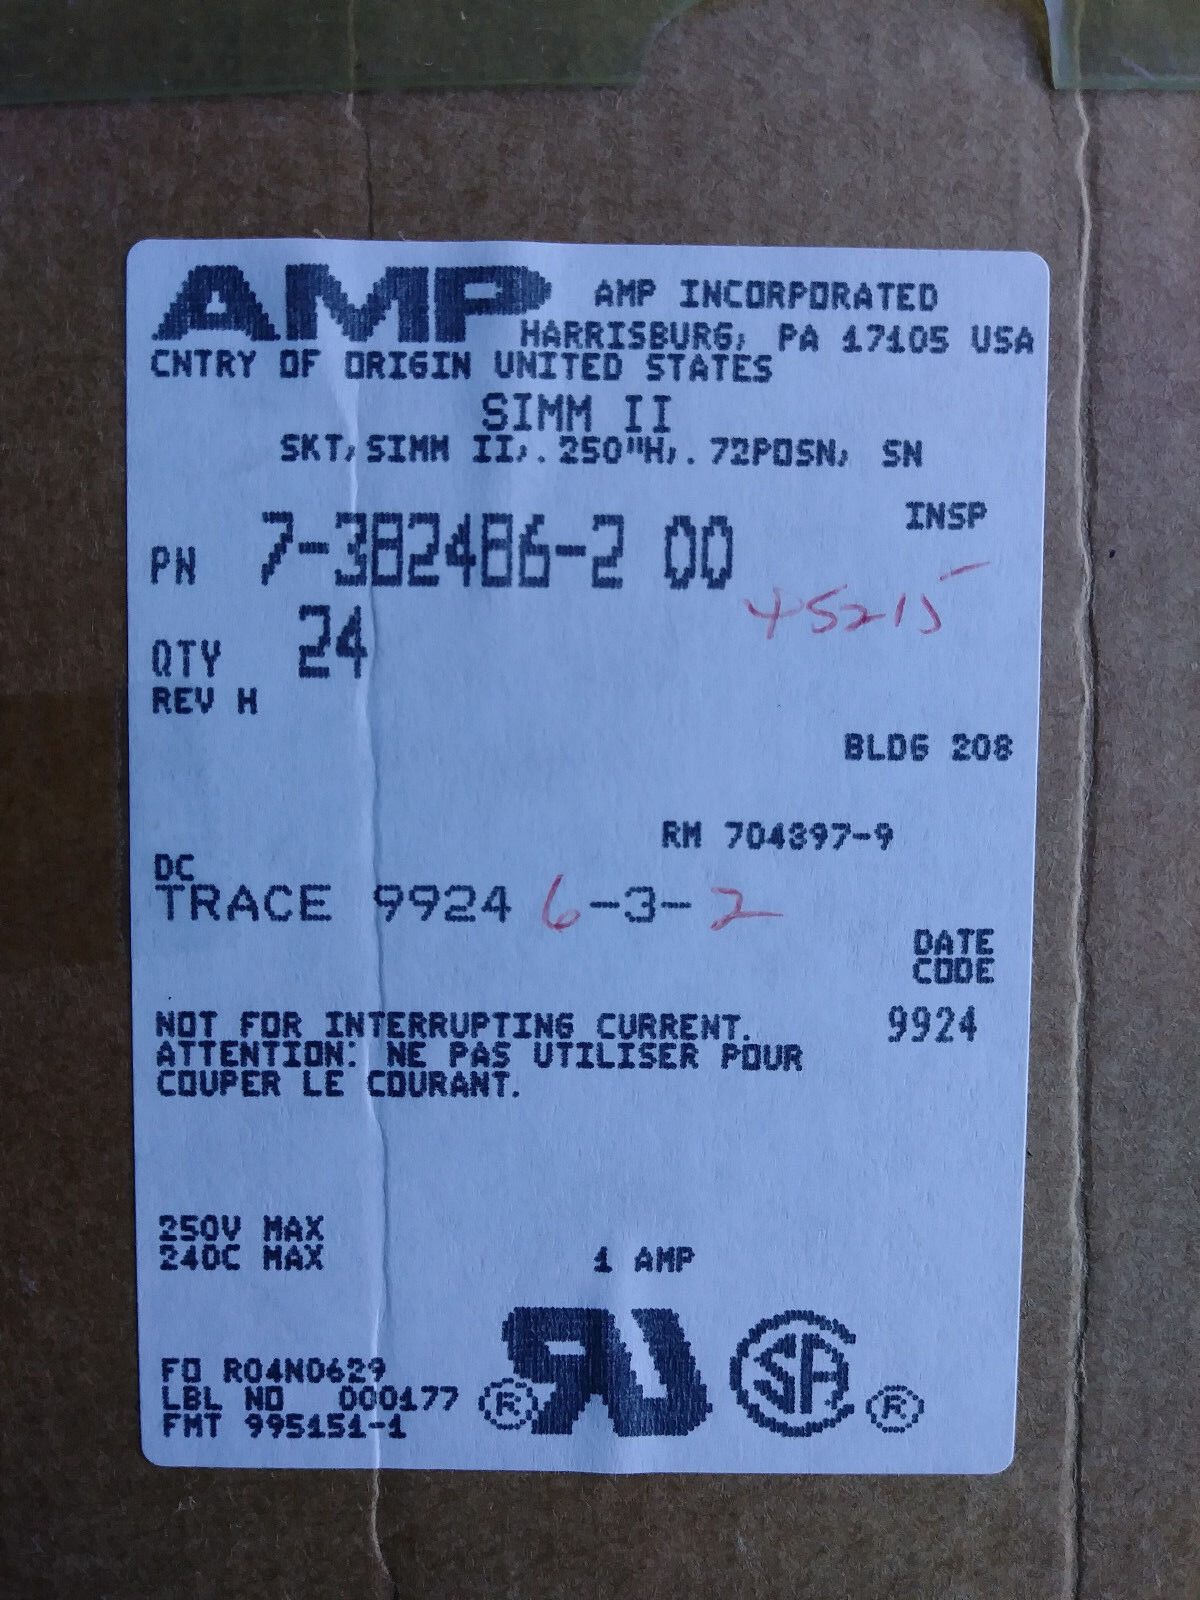 AMP  7-382486-2 SIMM II,.250\